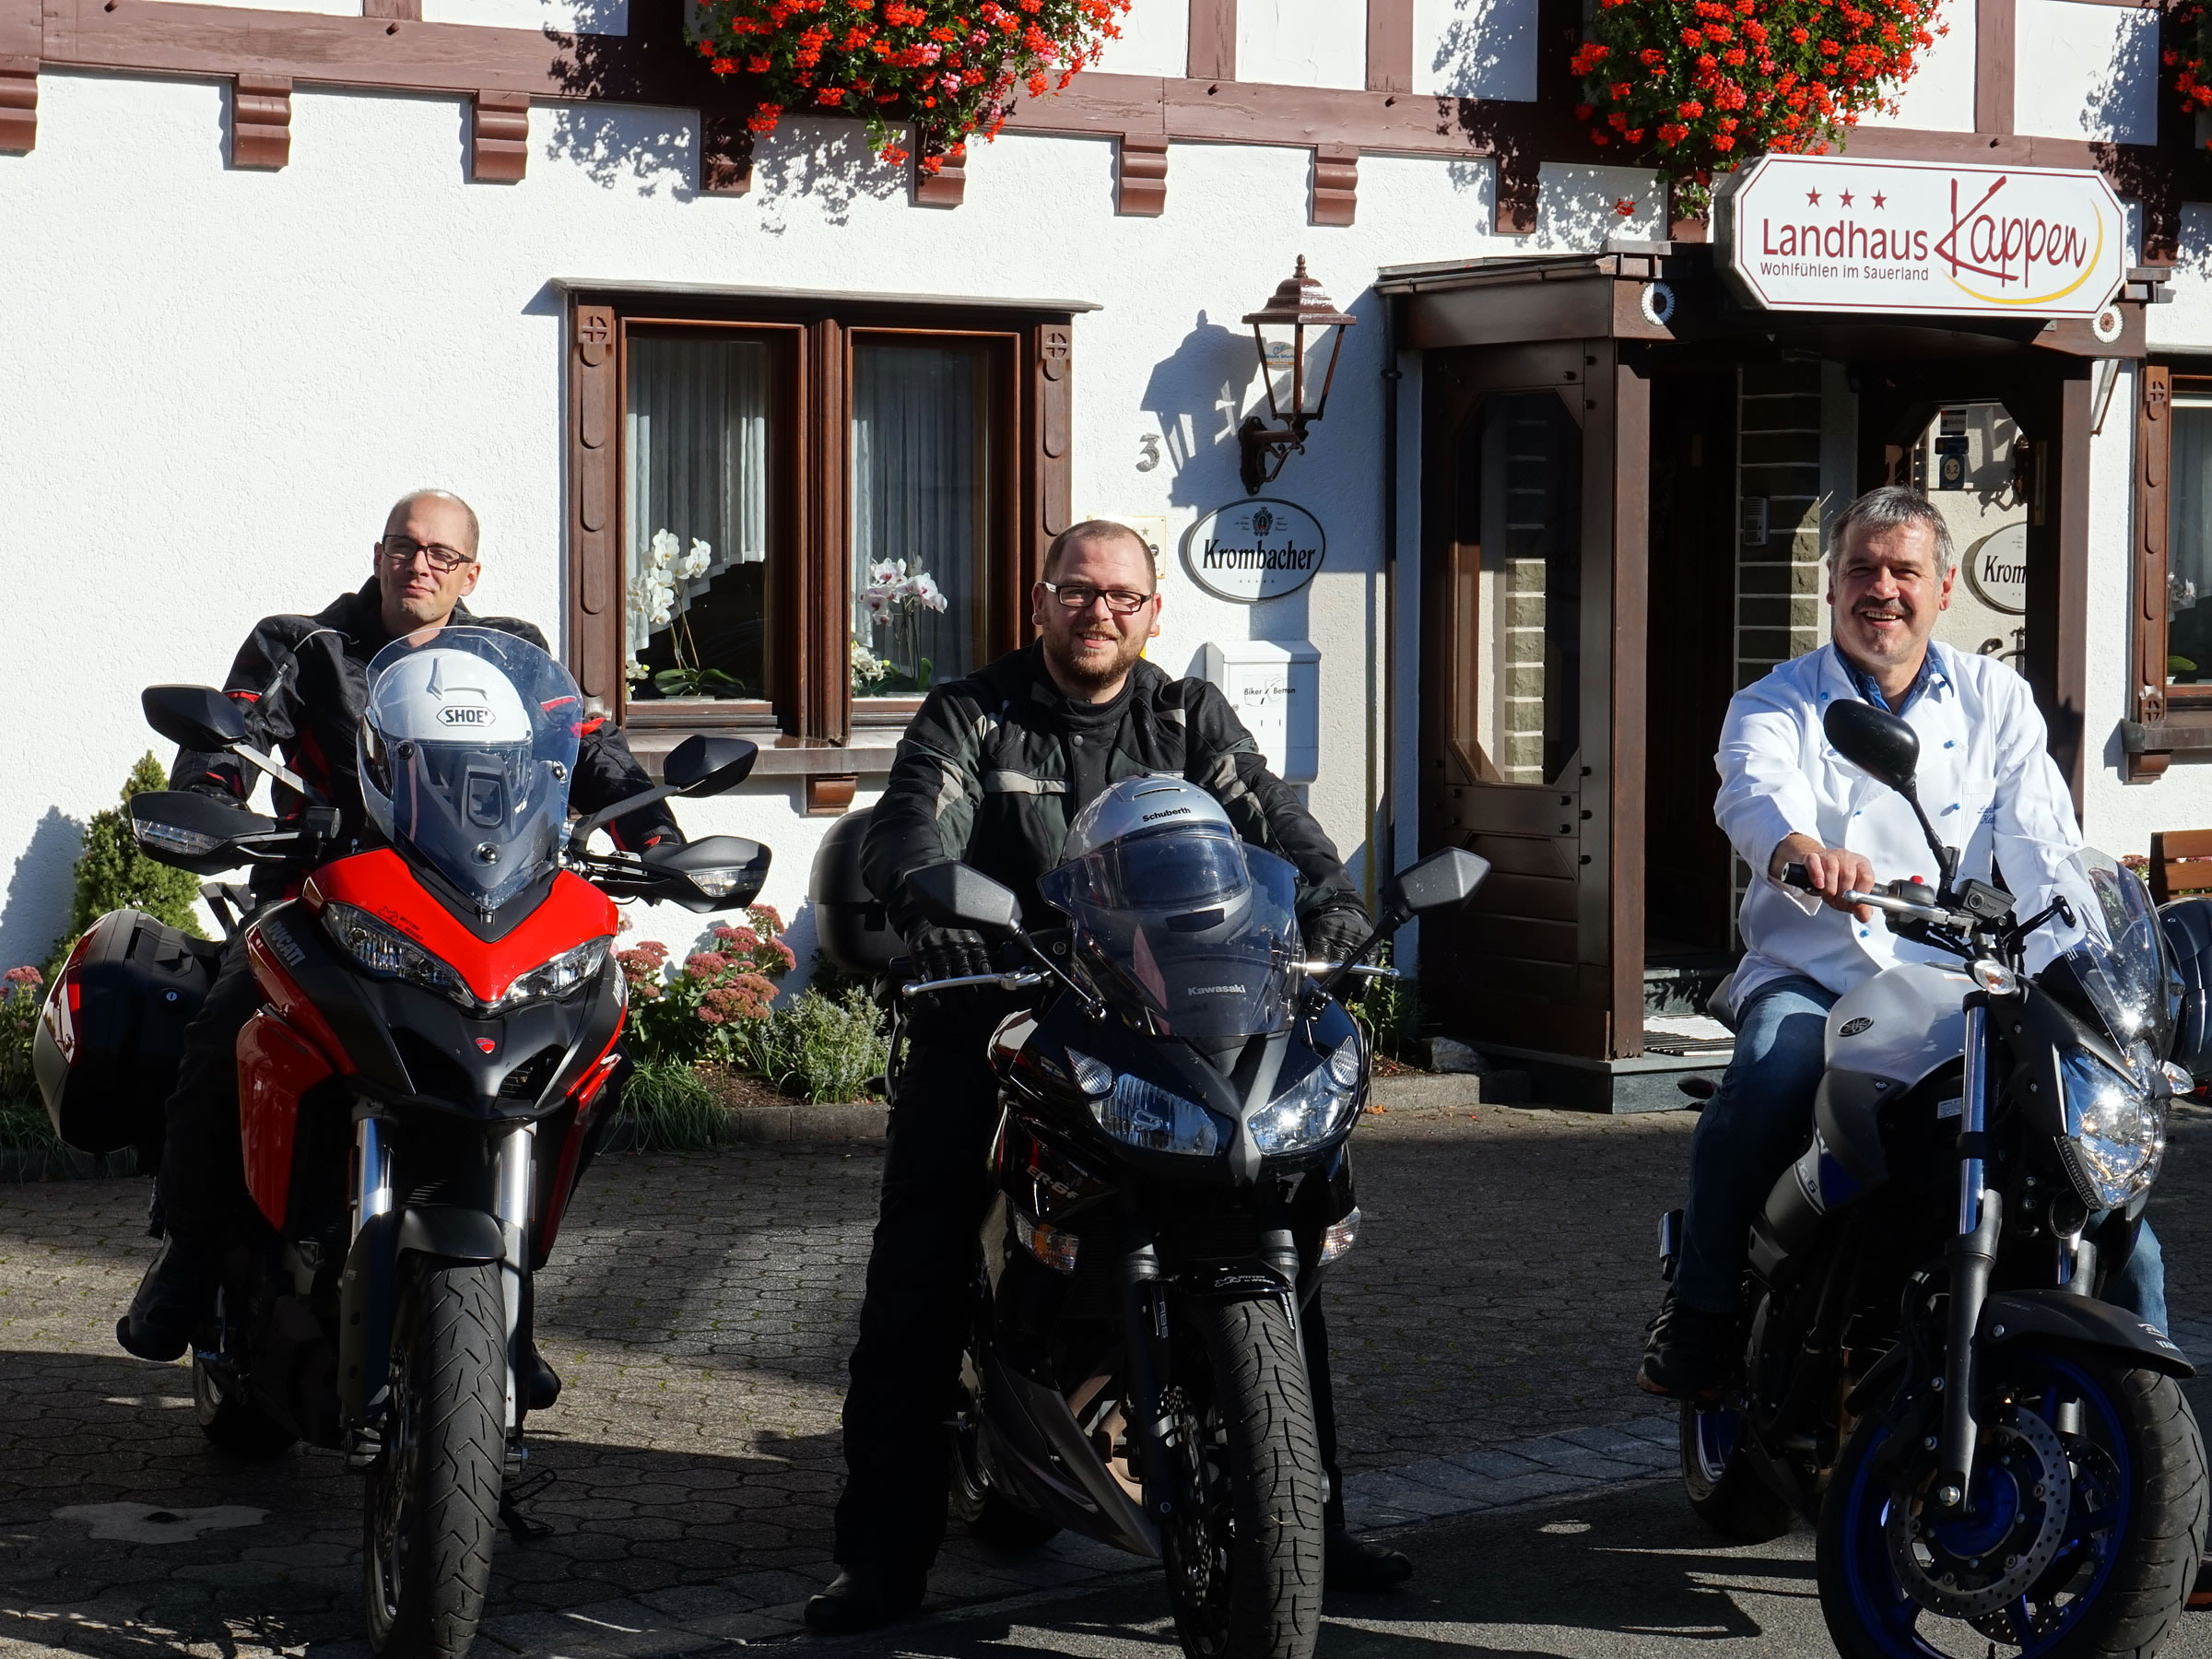 Wir sind selbst leidenschaftliche Motorradfahrer und geben Ihnen gerne Tips zu den schönsten Touren im Sauerland.